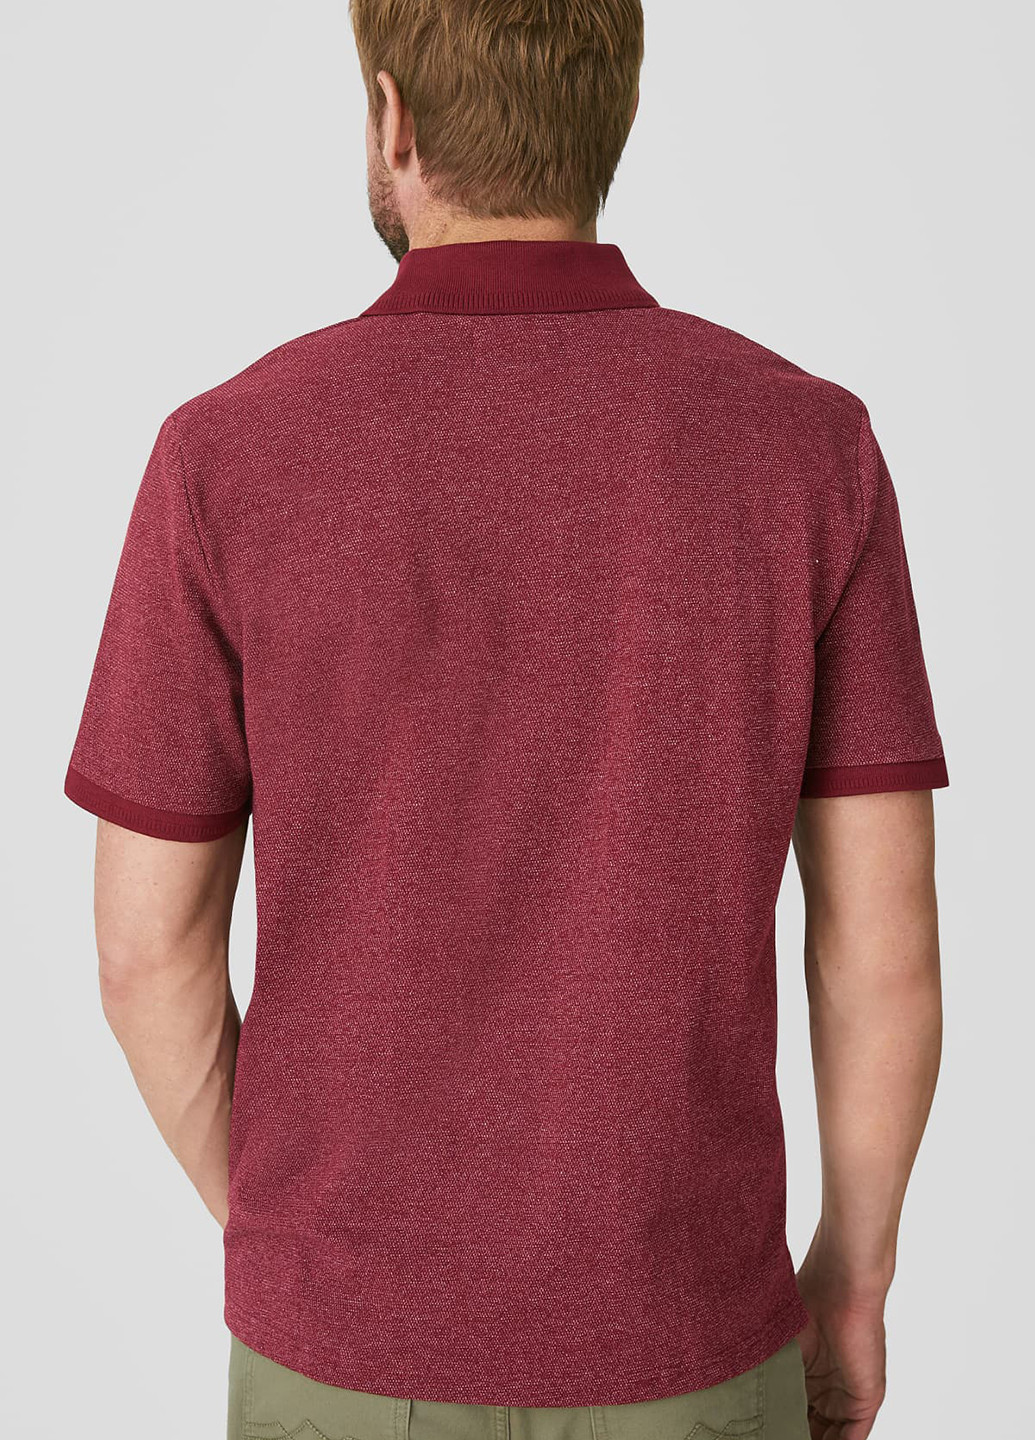 Бордовая футболка-поло для мужчин C&A однотонная